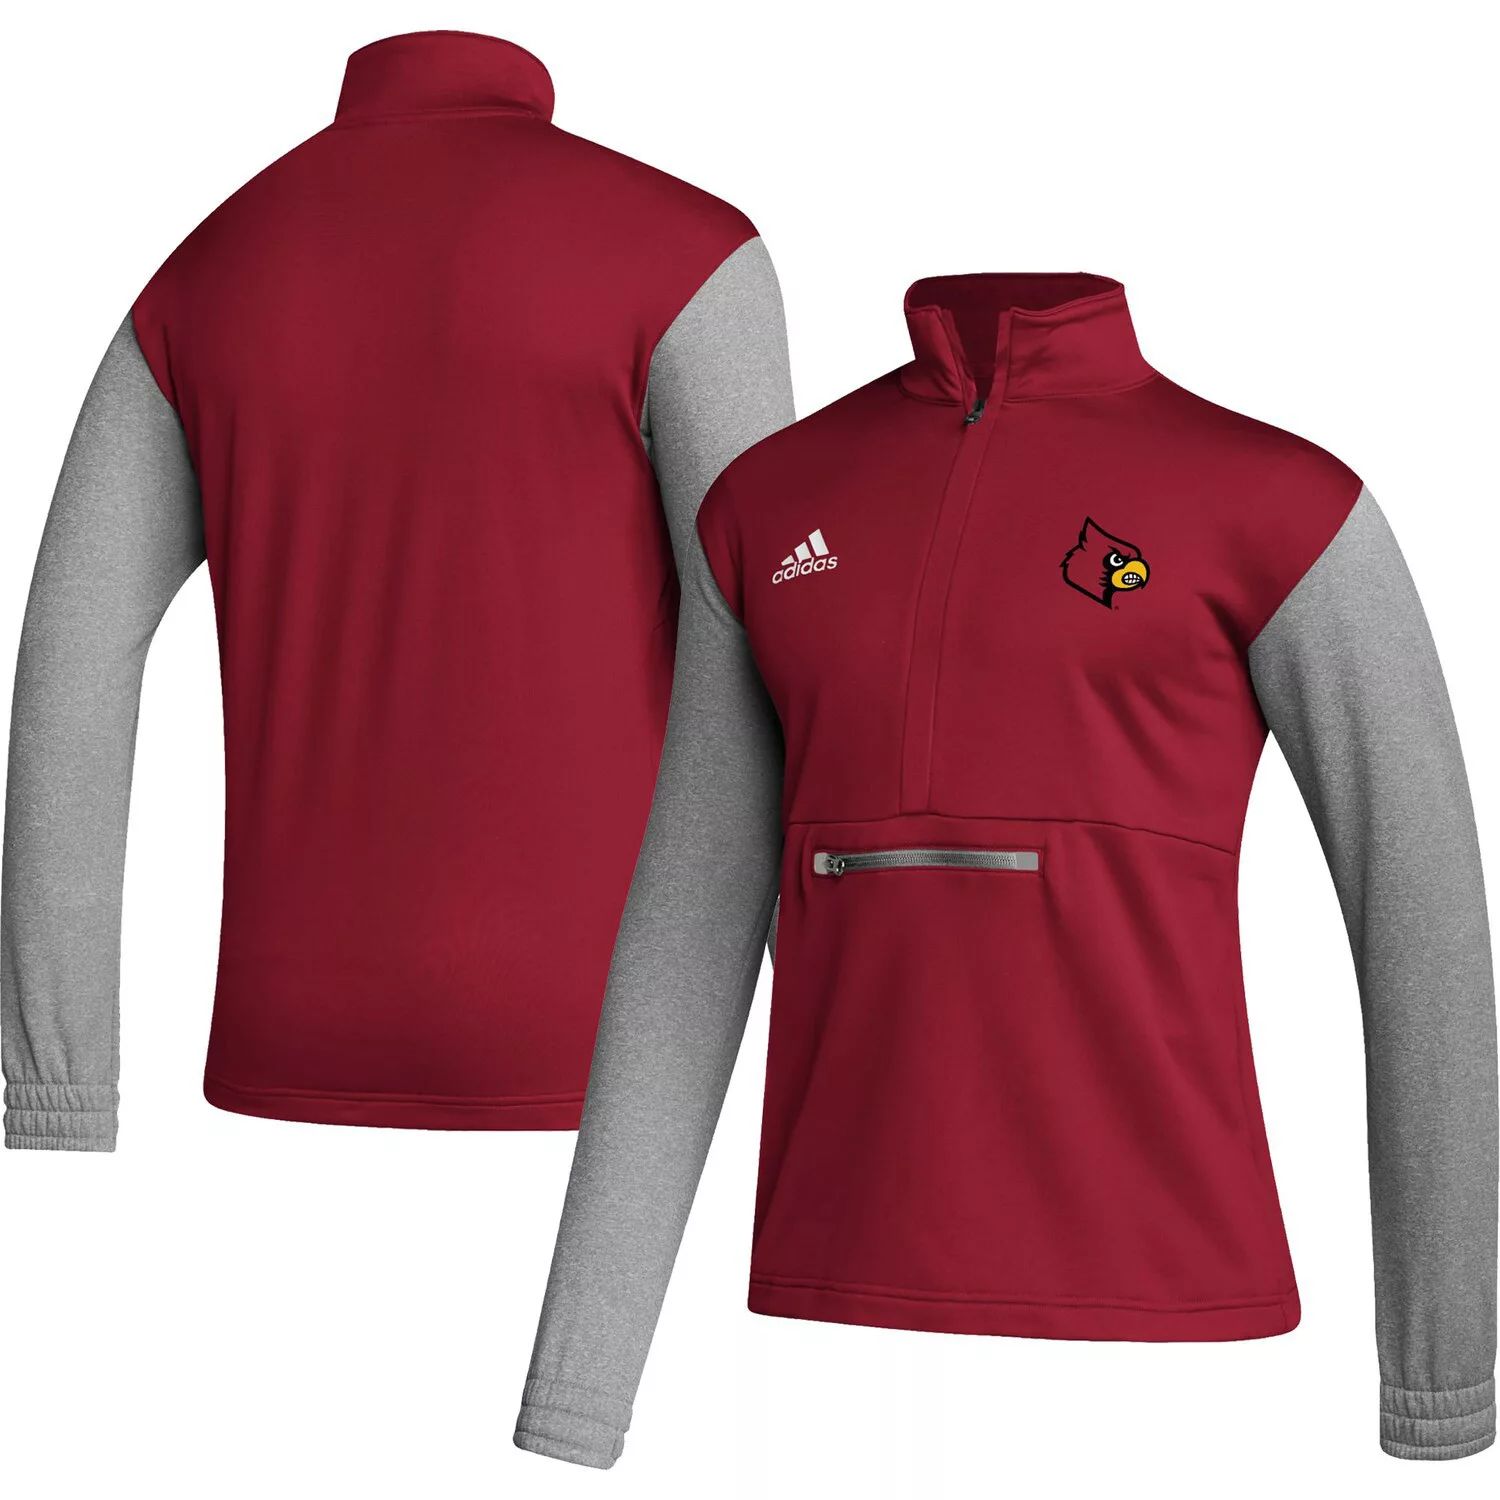 Мужская красная/серая футболка с застежкой-молнией Louisville Cardinals Team AEROREADY adidas